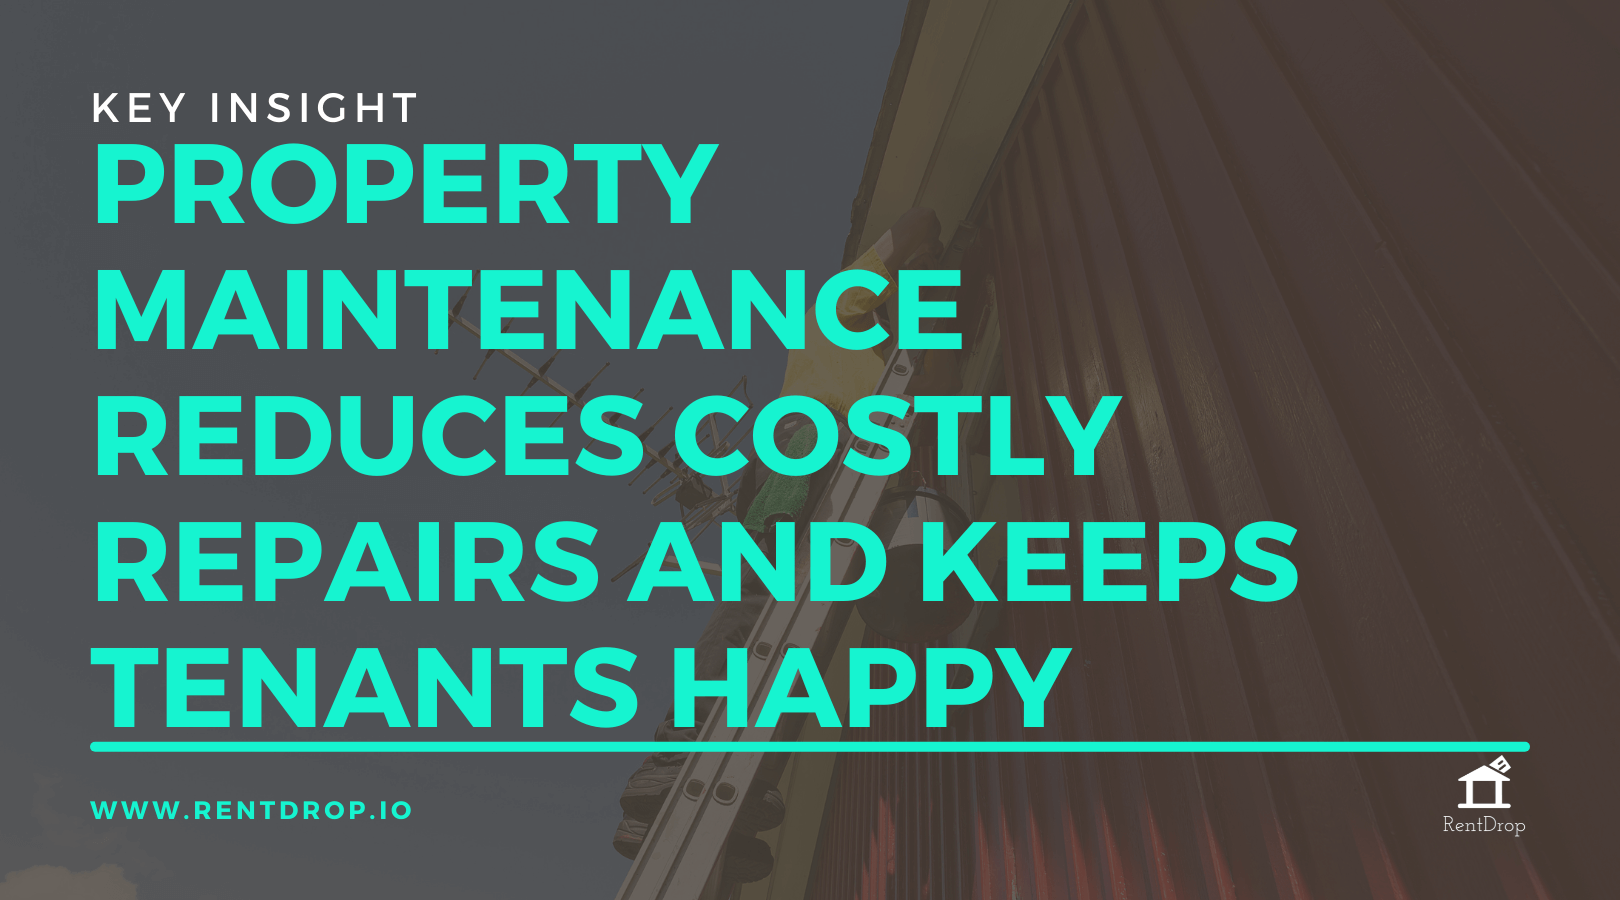 property maintenance services rentdrop key insight